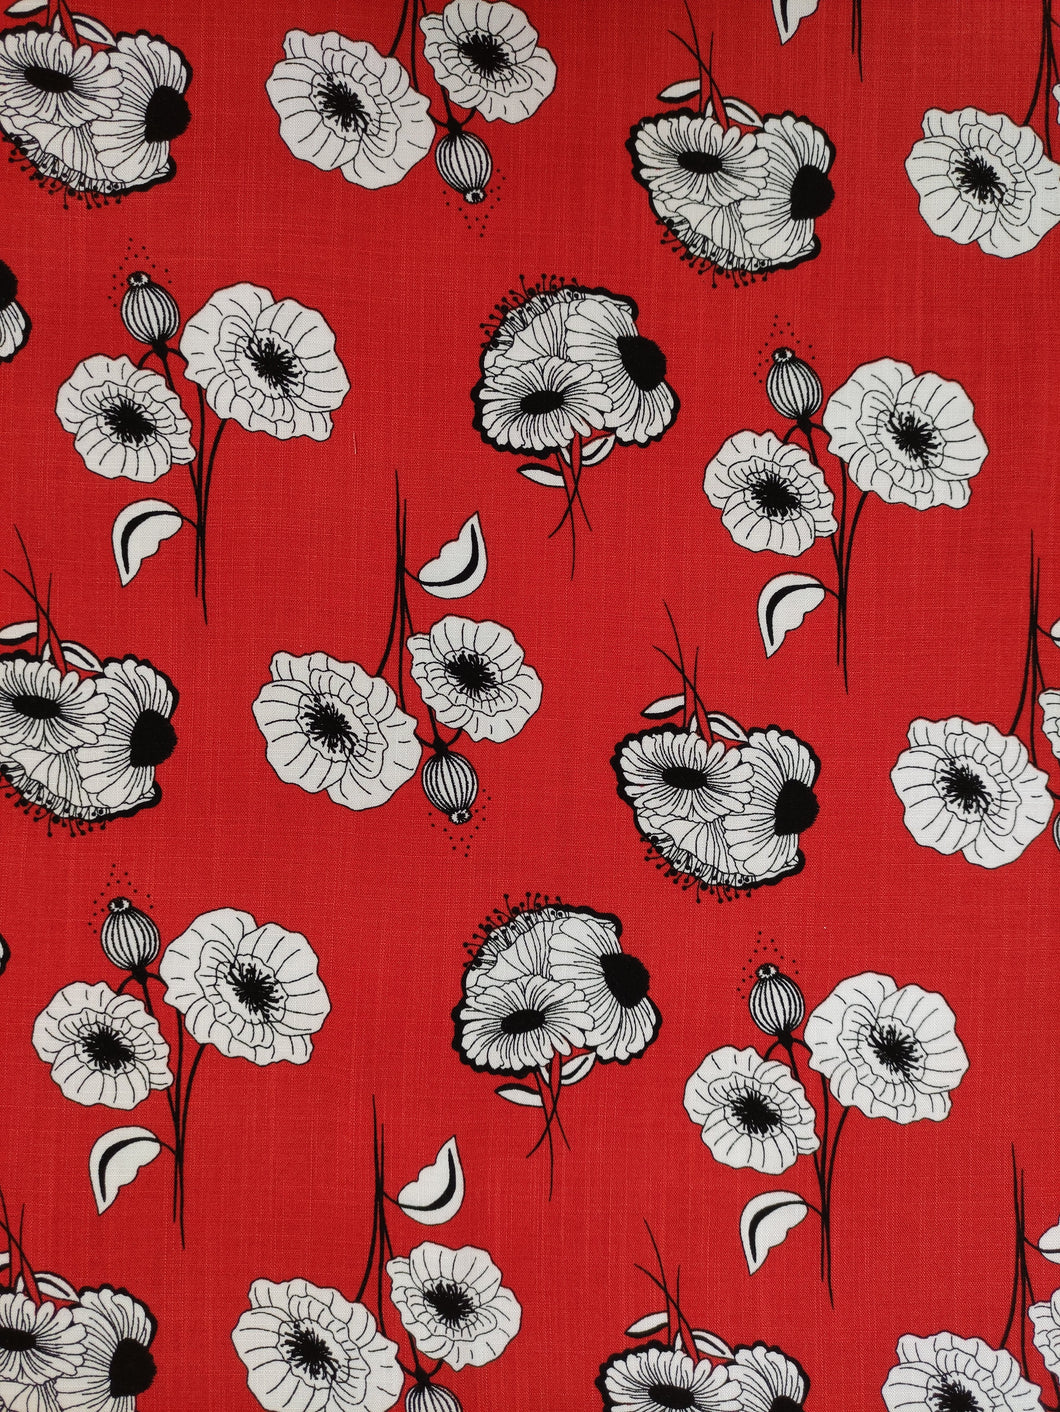 Viscose Fleurs de Pavot Blanches et Noires sur Fond Rouge - Coupon de 1m80